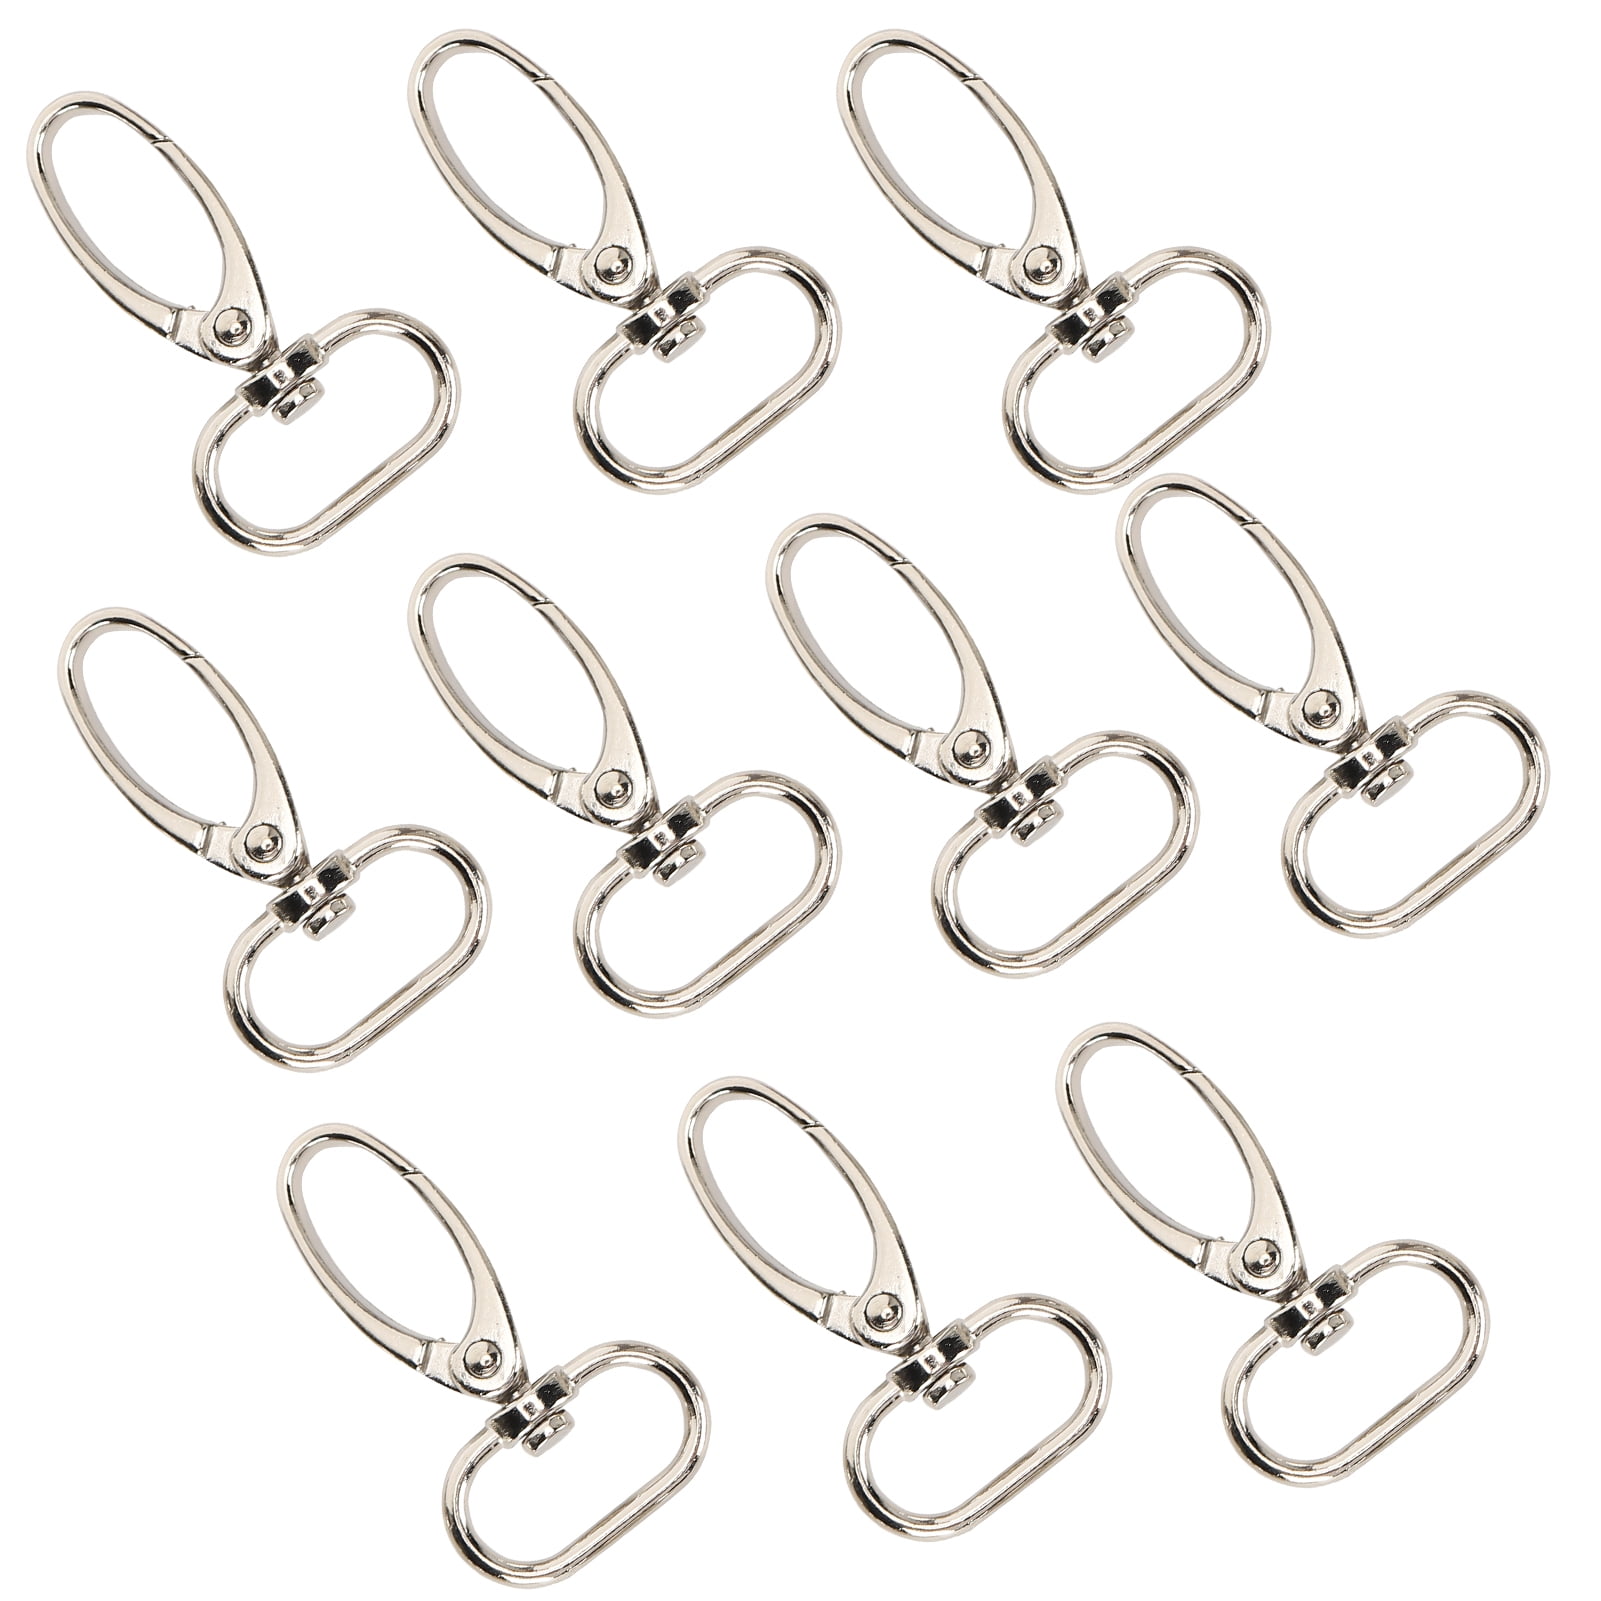 10x Keychain Clip Hook Car Keys Dog Tag Luggage Buckle Metal Silver DIY Gifts 